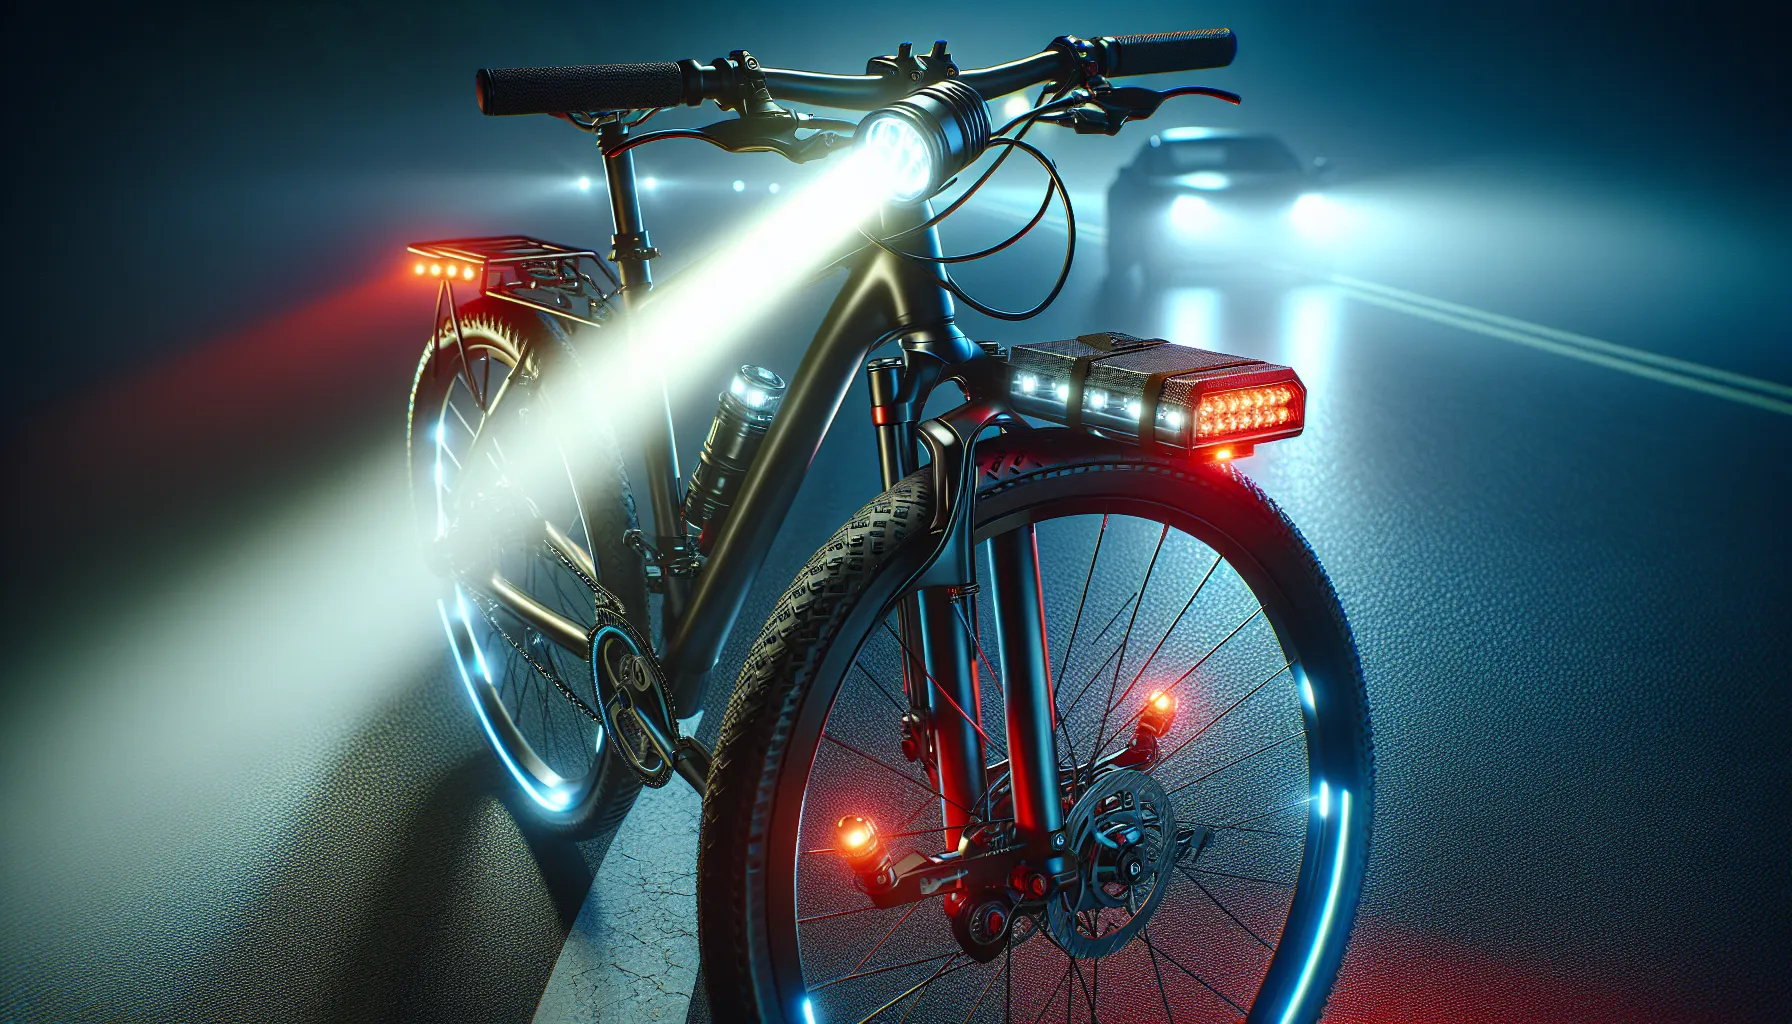 As luzes de bicicleta são uma parte essencial da segurança ao andar de bicicleta, especialmente durante a noite ou em condições de pouca visibilidade. Aqui estão algumas dicas para escolher e usar luzes de bicicleta de forma eficiente:

1. Escolha luzes de alta qualidade: Opte por luzes de bicicleta que sejam duráveis, à prova d'água e tenham uma boa potência de